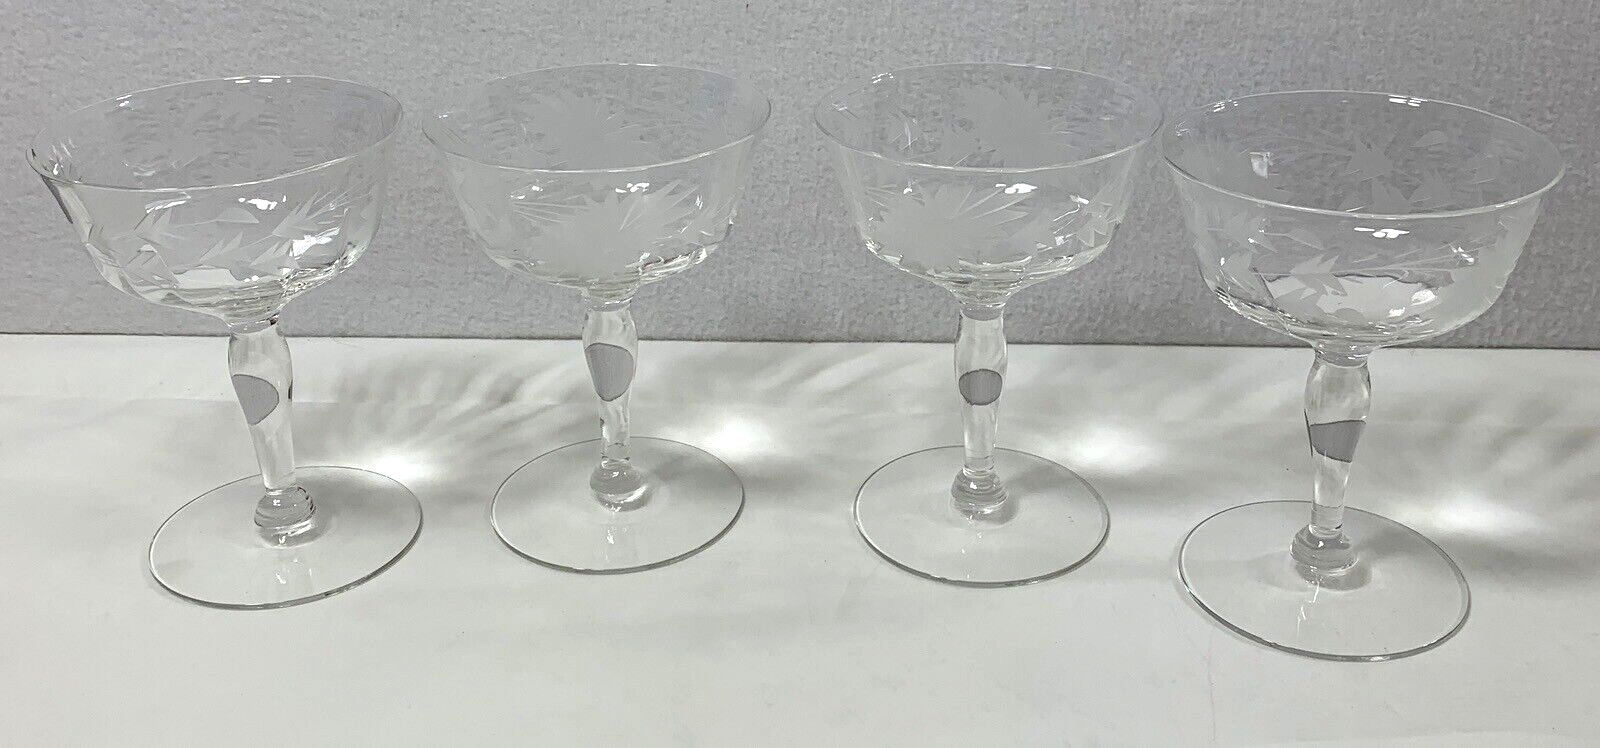 Vintage Glassware 4 Floral Leaf Design Champagne Sherbet Glasses Wedding